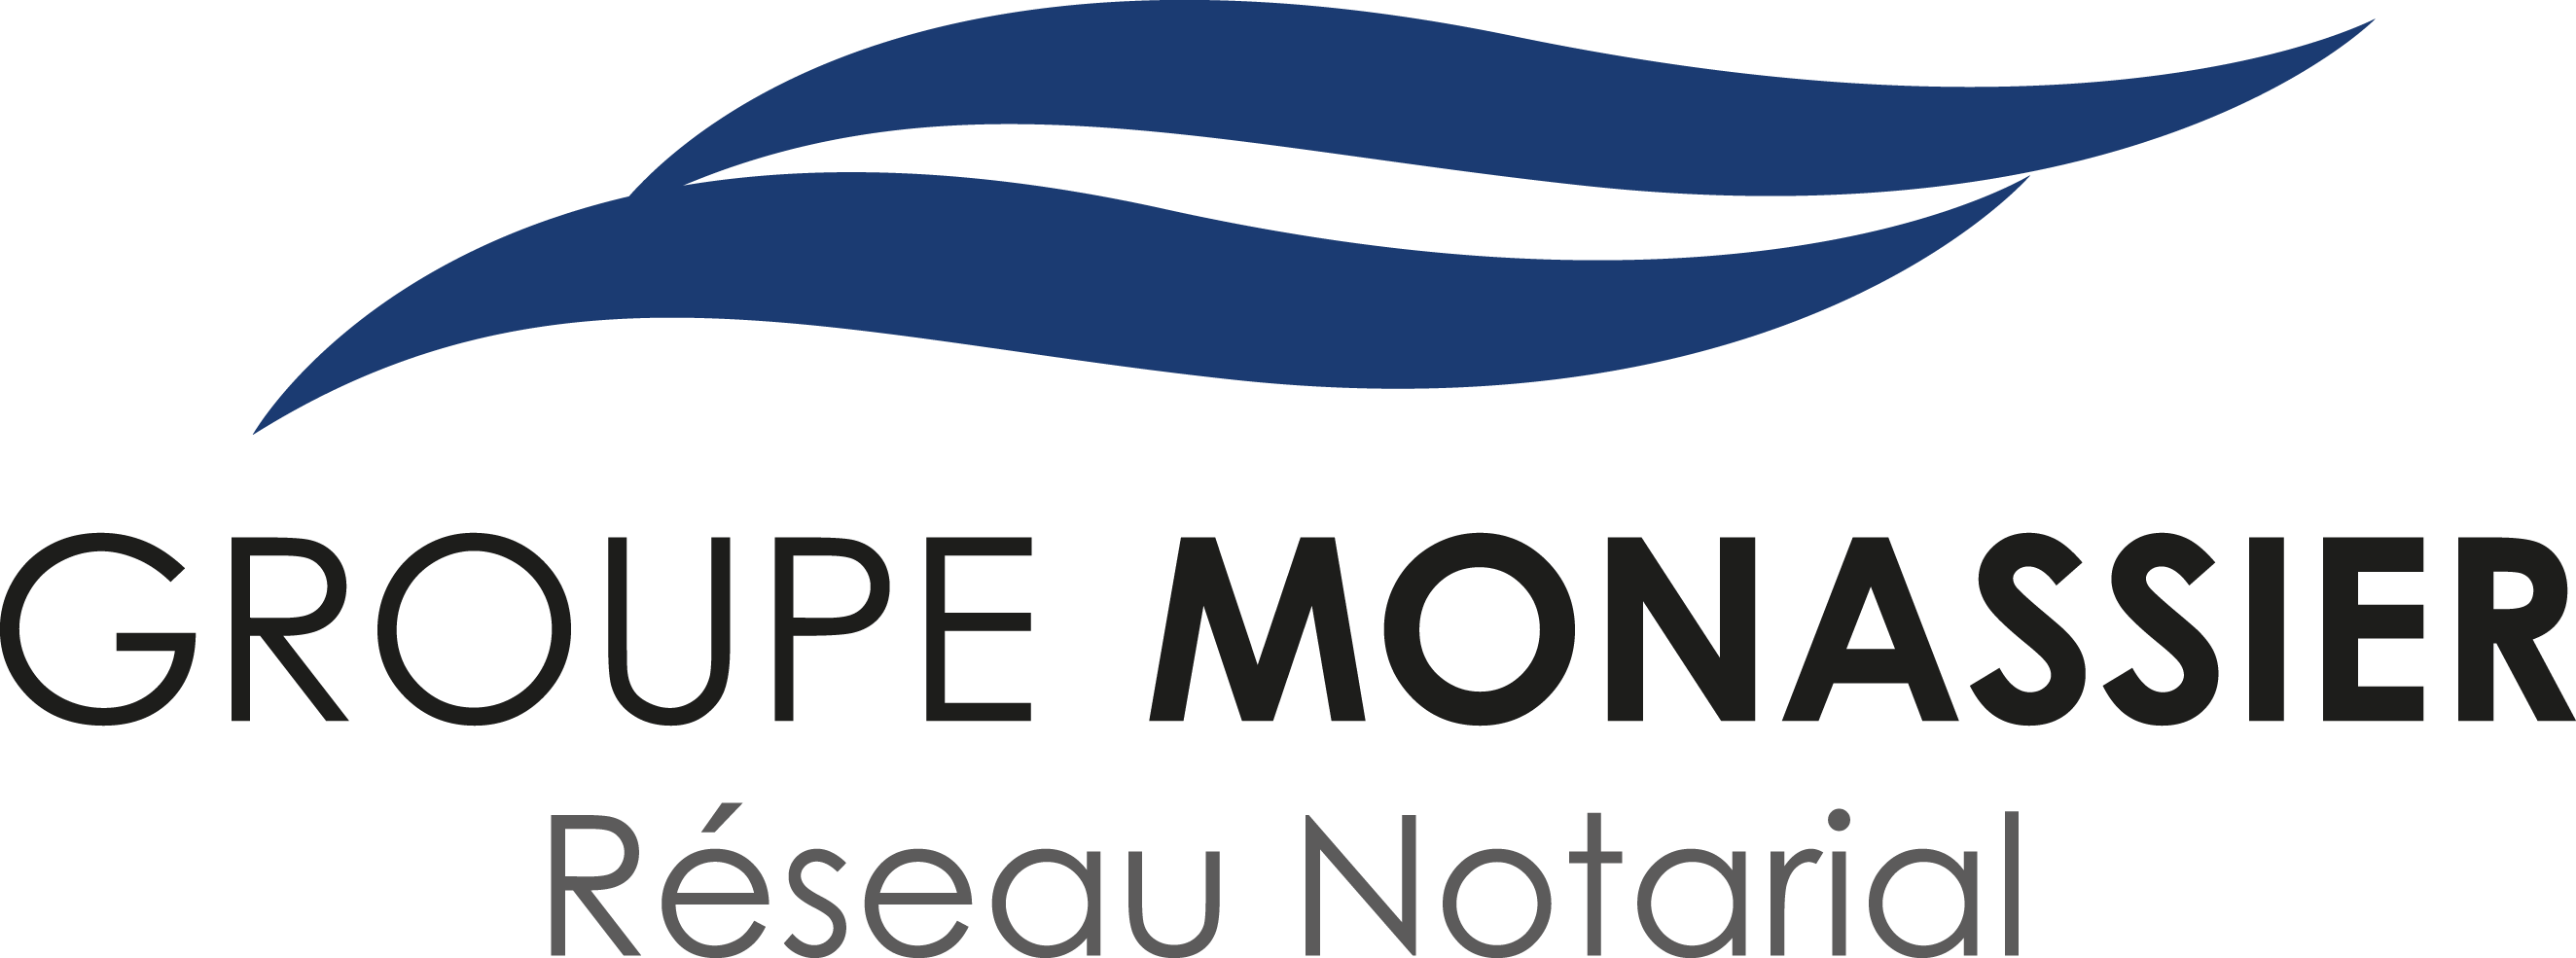 Groupe Monassier Val-de-Loire | NOTAIRES à JOUÉ-LÈS-TOURS et ORLÉANS